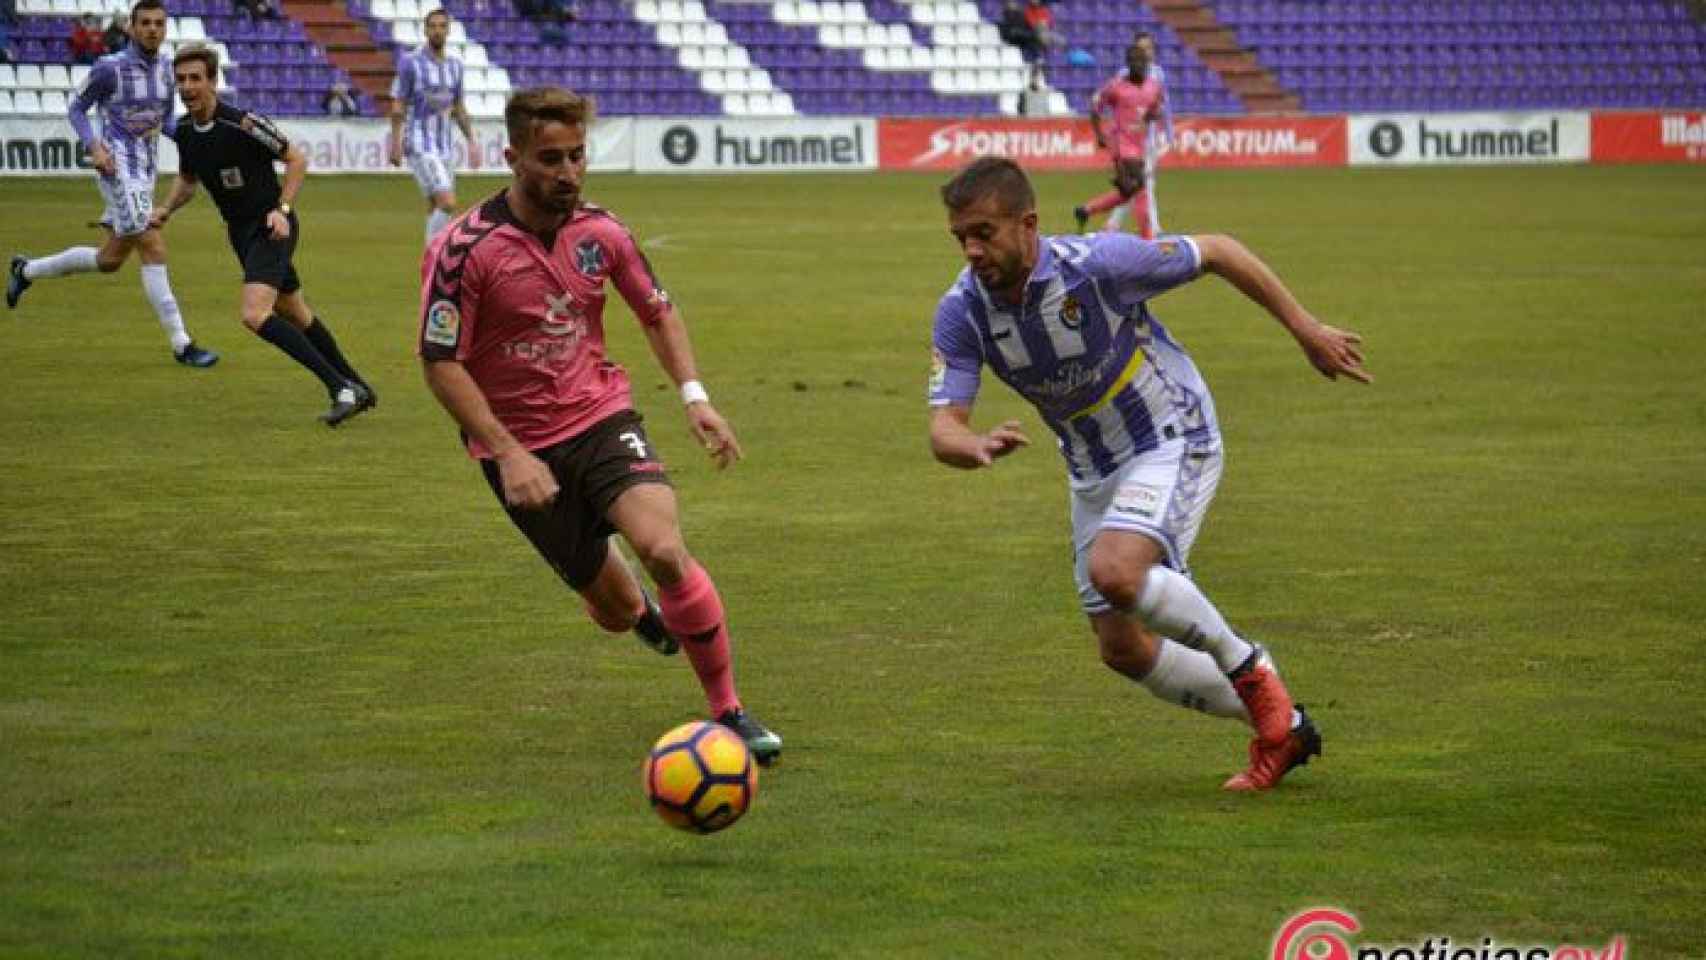 Real Valladolid Tenerife Zorrilla Segunda Division (6)